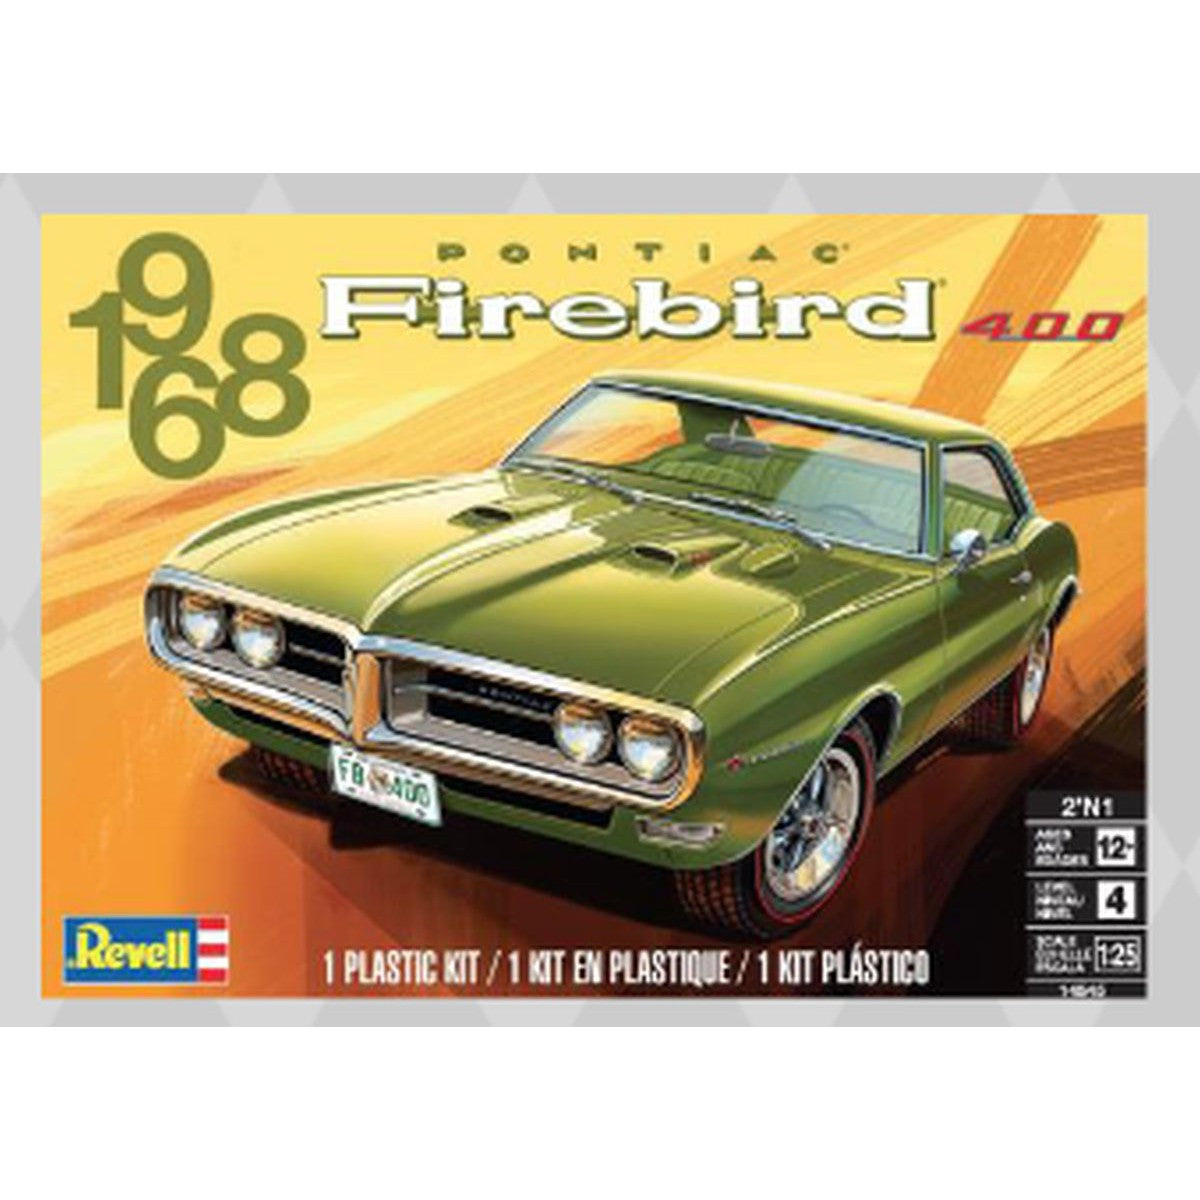 Revell 1968 Firebird 2'N1